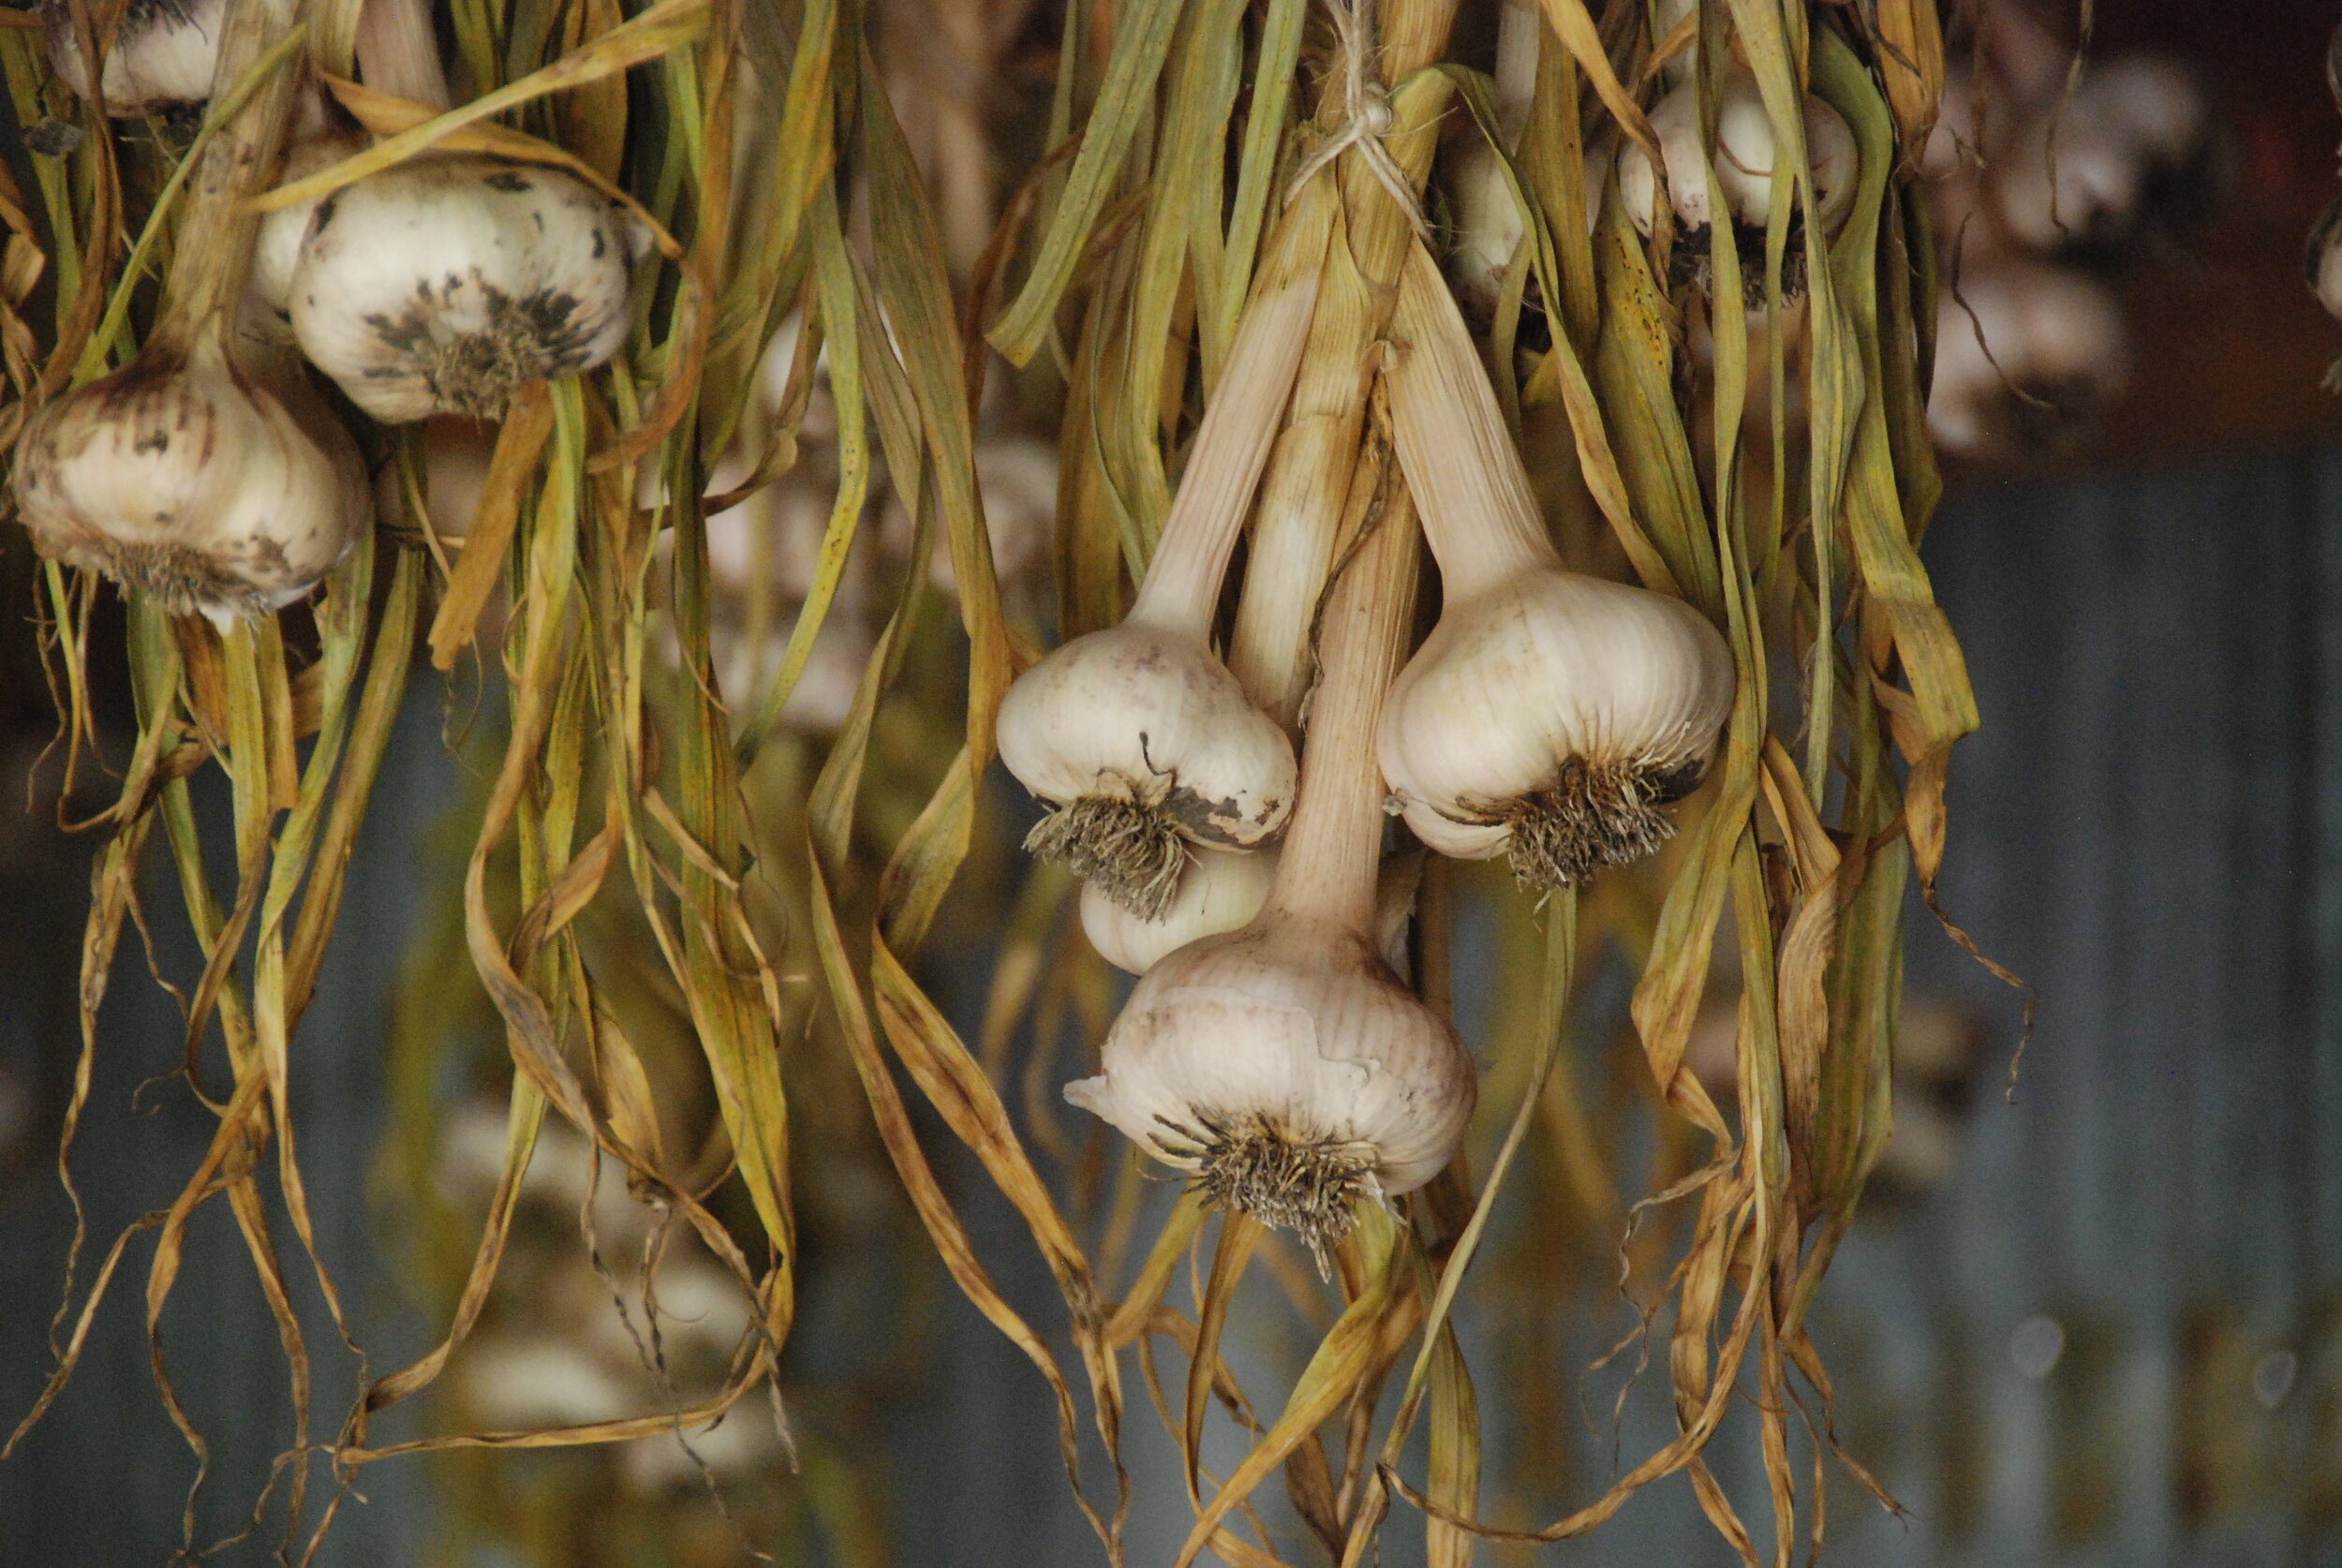 garlic hanging in shed